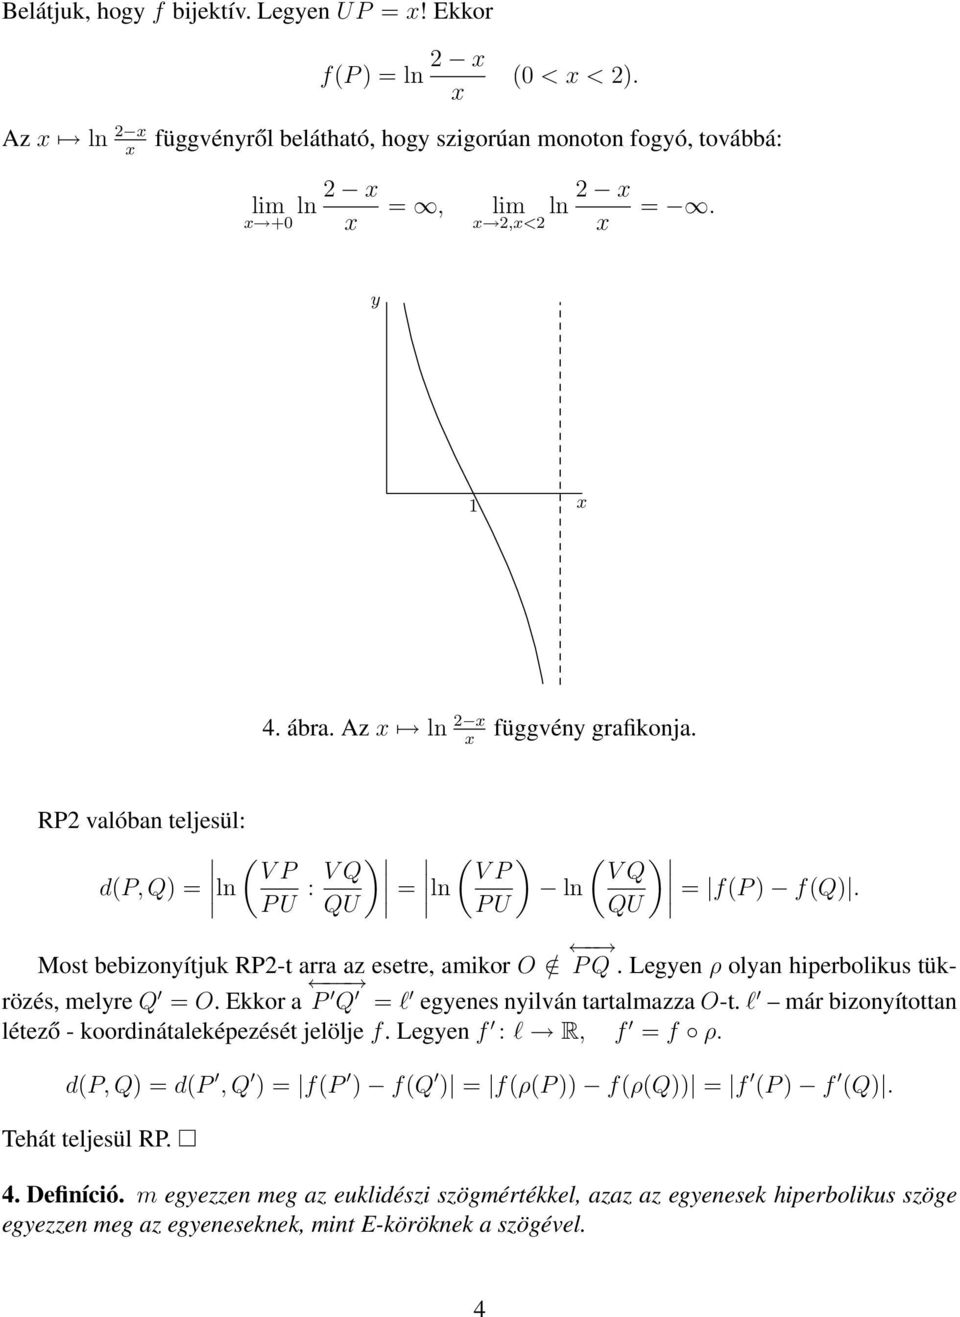 Legyen ρ olyan hiperbolikus tükrözés, melyre Q = O. Ekkor a P Q = l egyenes nyilván tartalmazza O-t. l már bizonyítottan létező - koordinátaleképezését jelölje f. Legyen f : l R, f = f ρ.